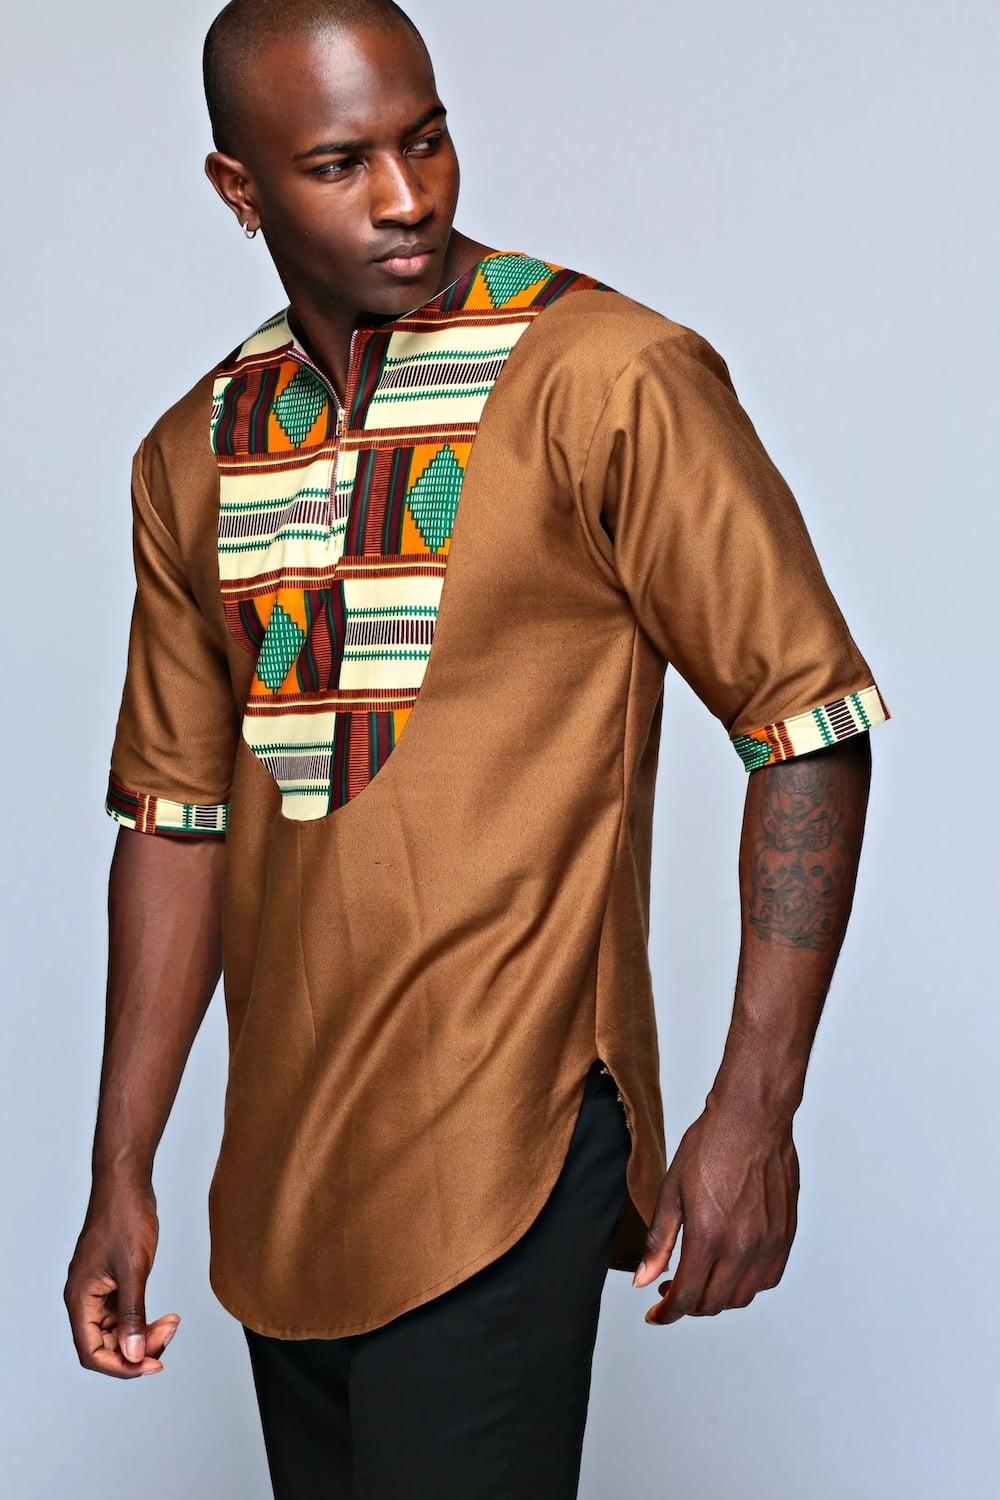 african wear pics for men
male african wear designs photos
african wear designs for guys